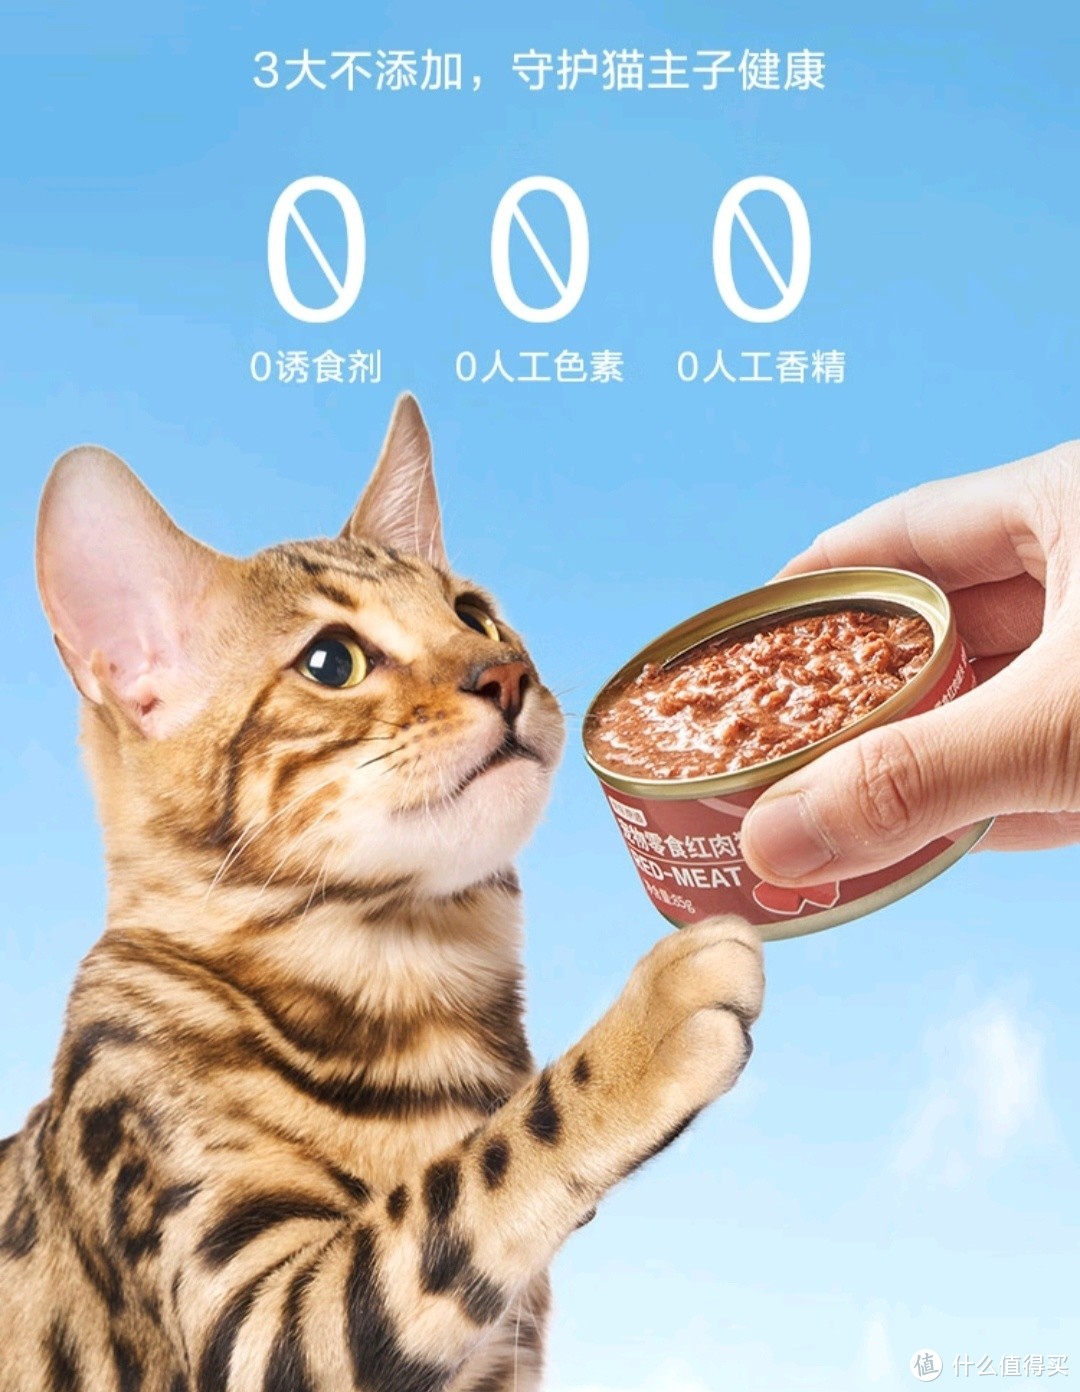 猫猫吃的食物不能太便宜，我相信便宜没好货，京东京造浓汤红肉罐头就很值得买。